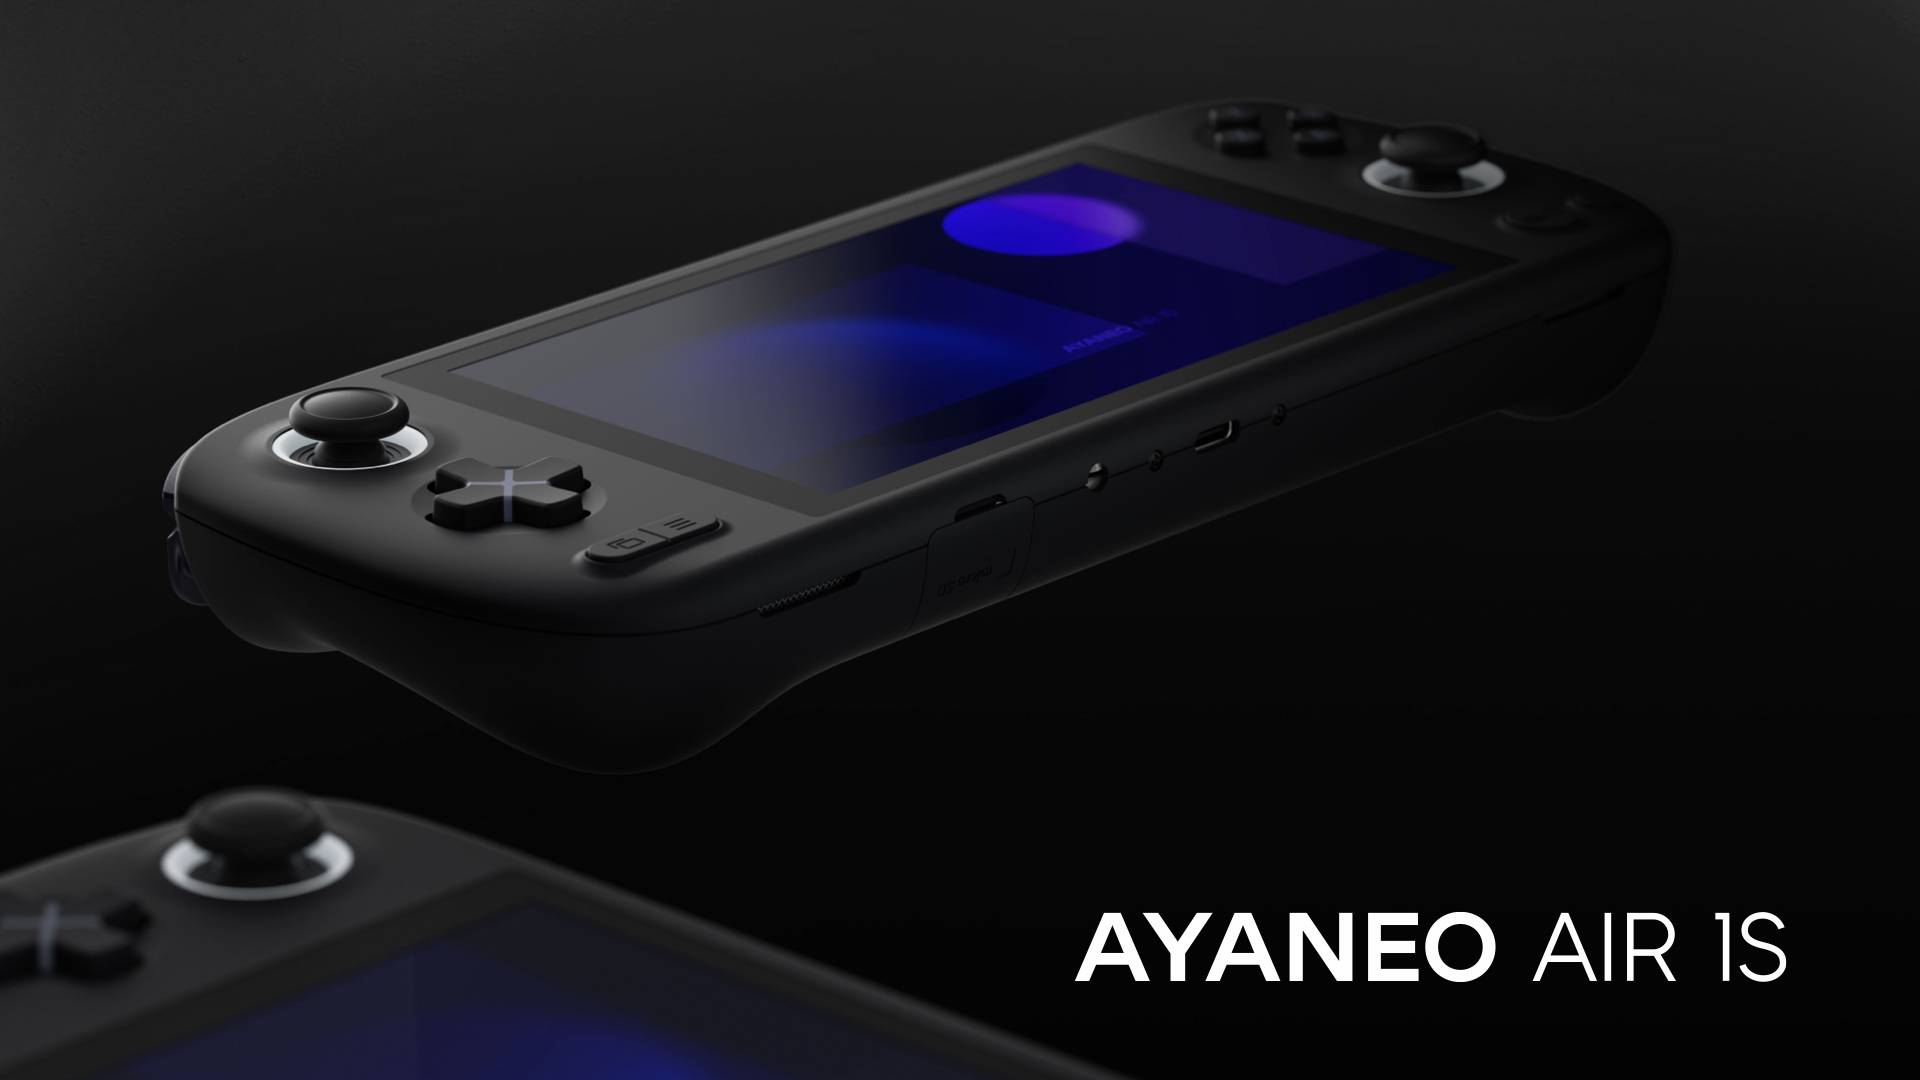 AYANEO AIR 1S è la nuova console portatile